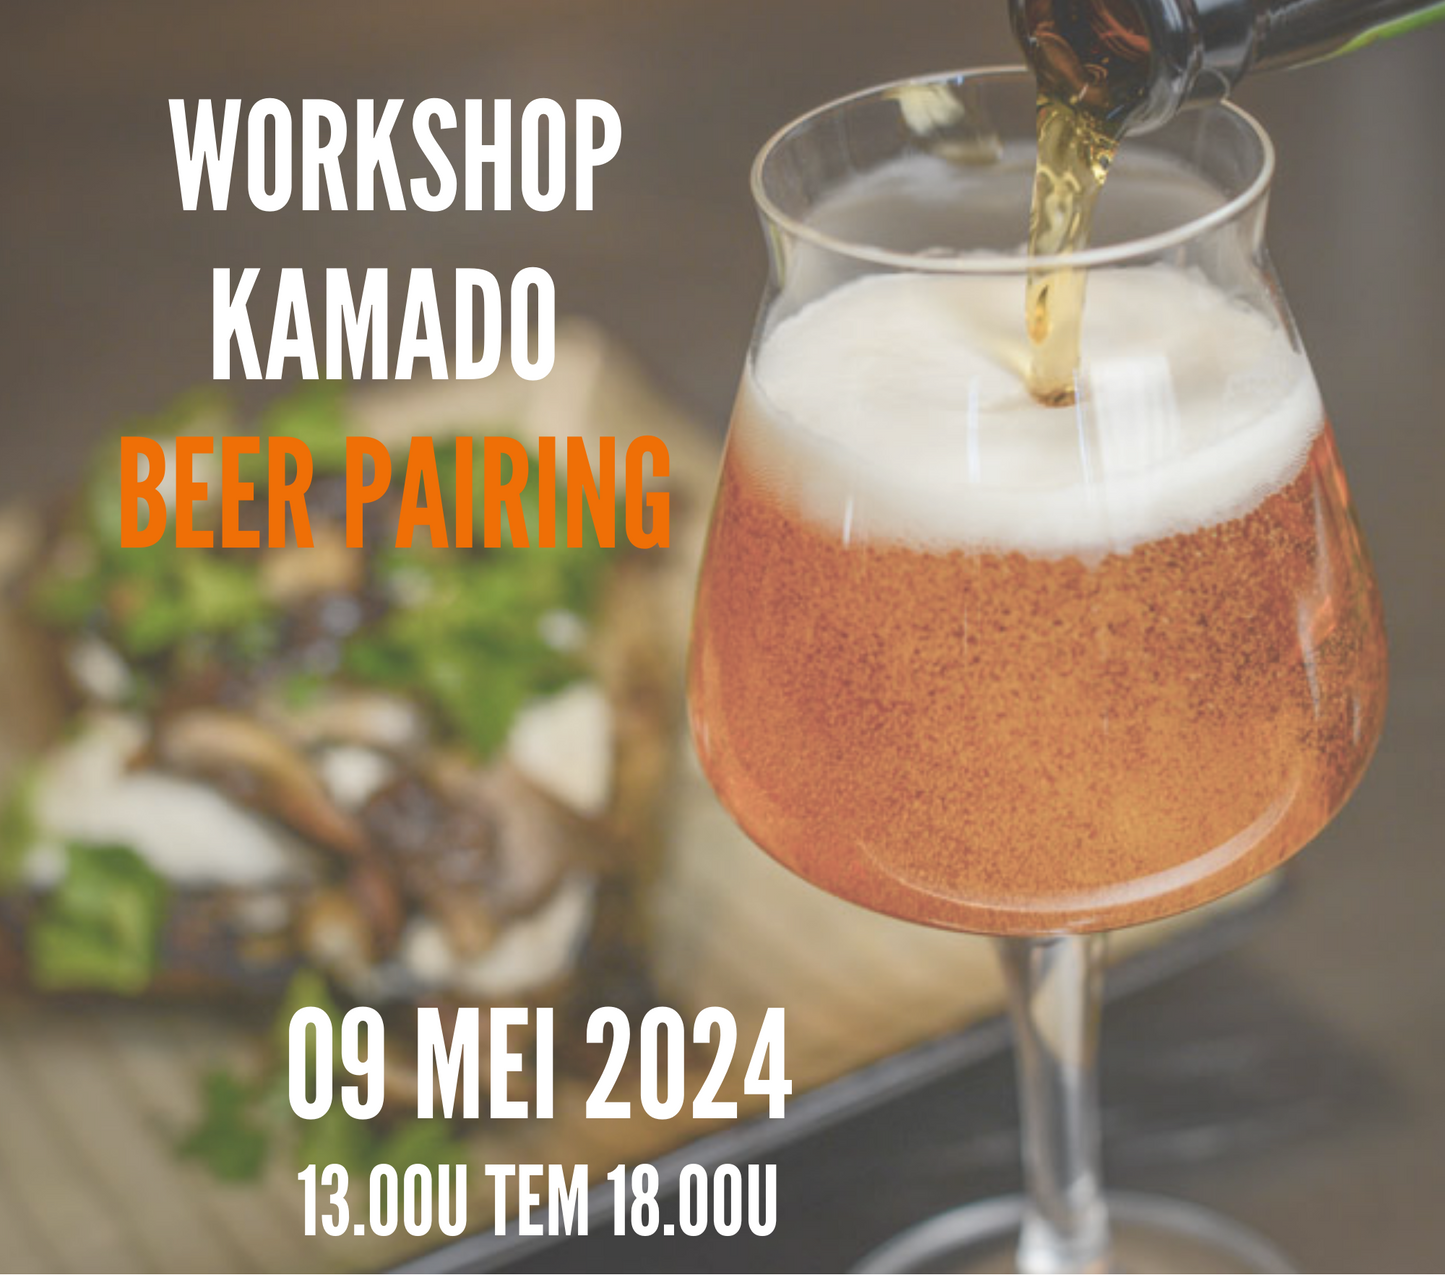 Workshop kamado beer pairing